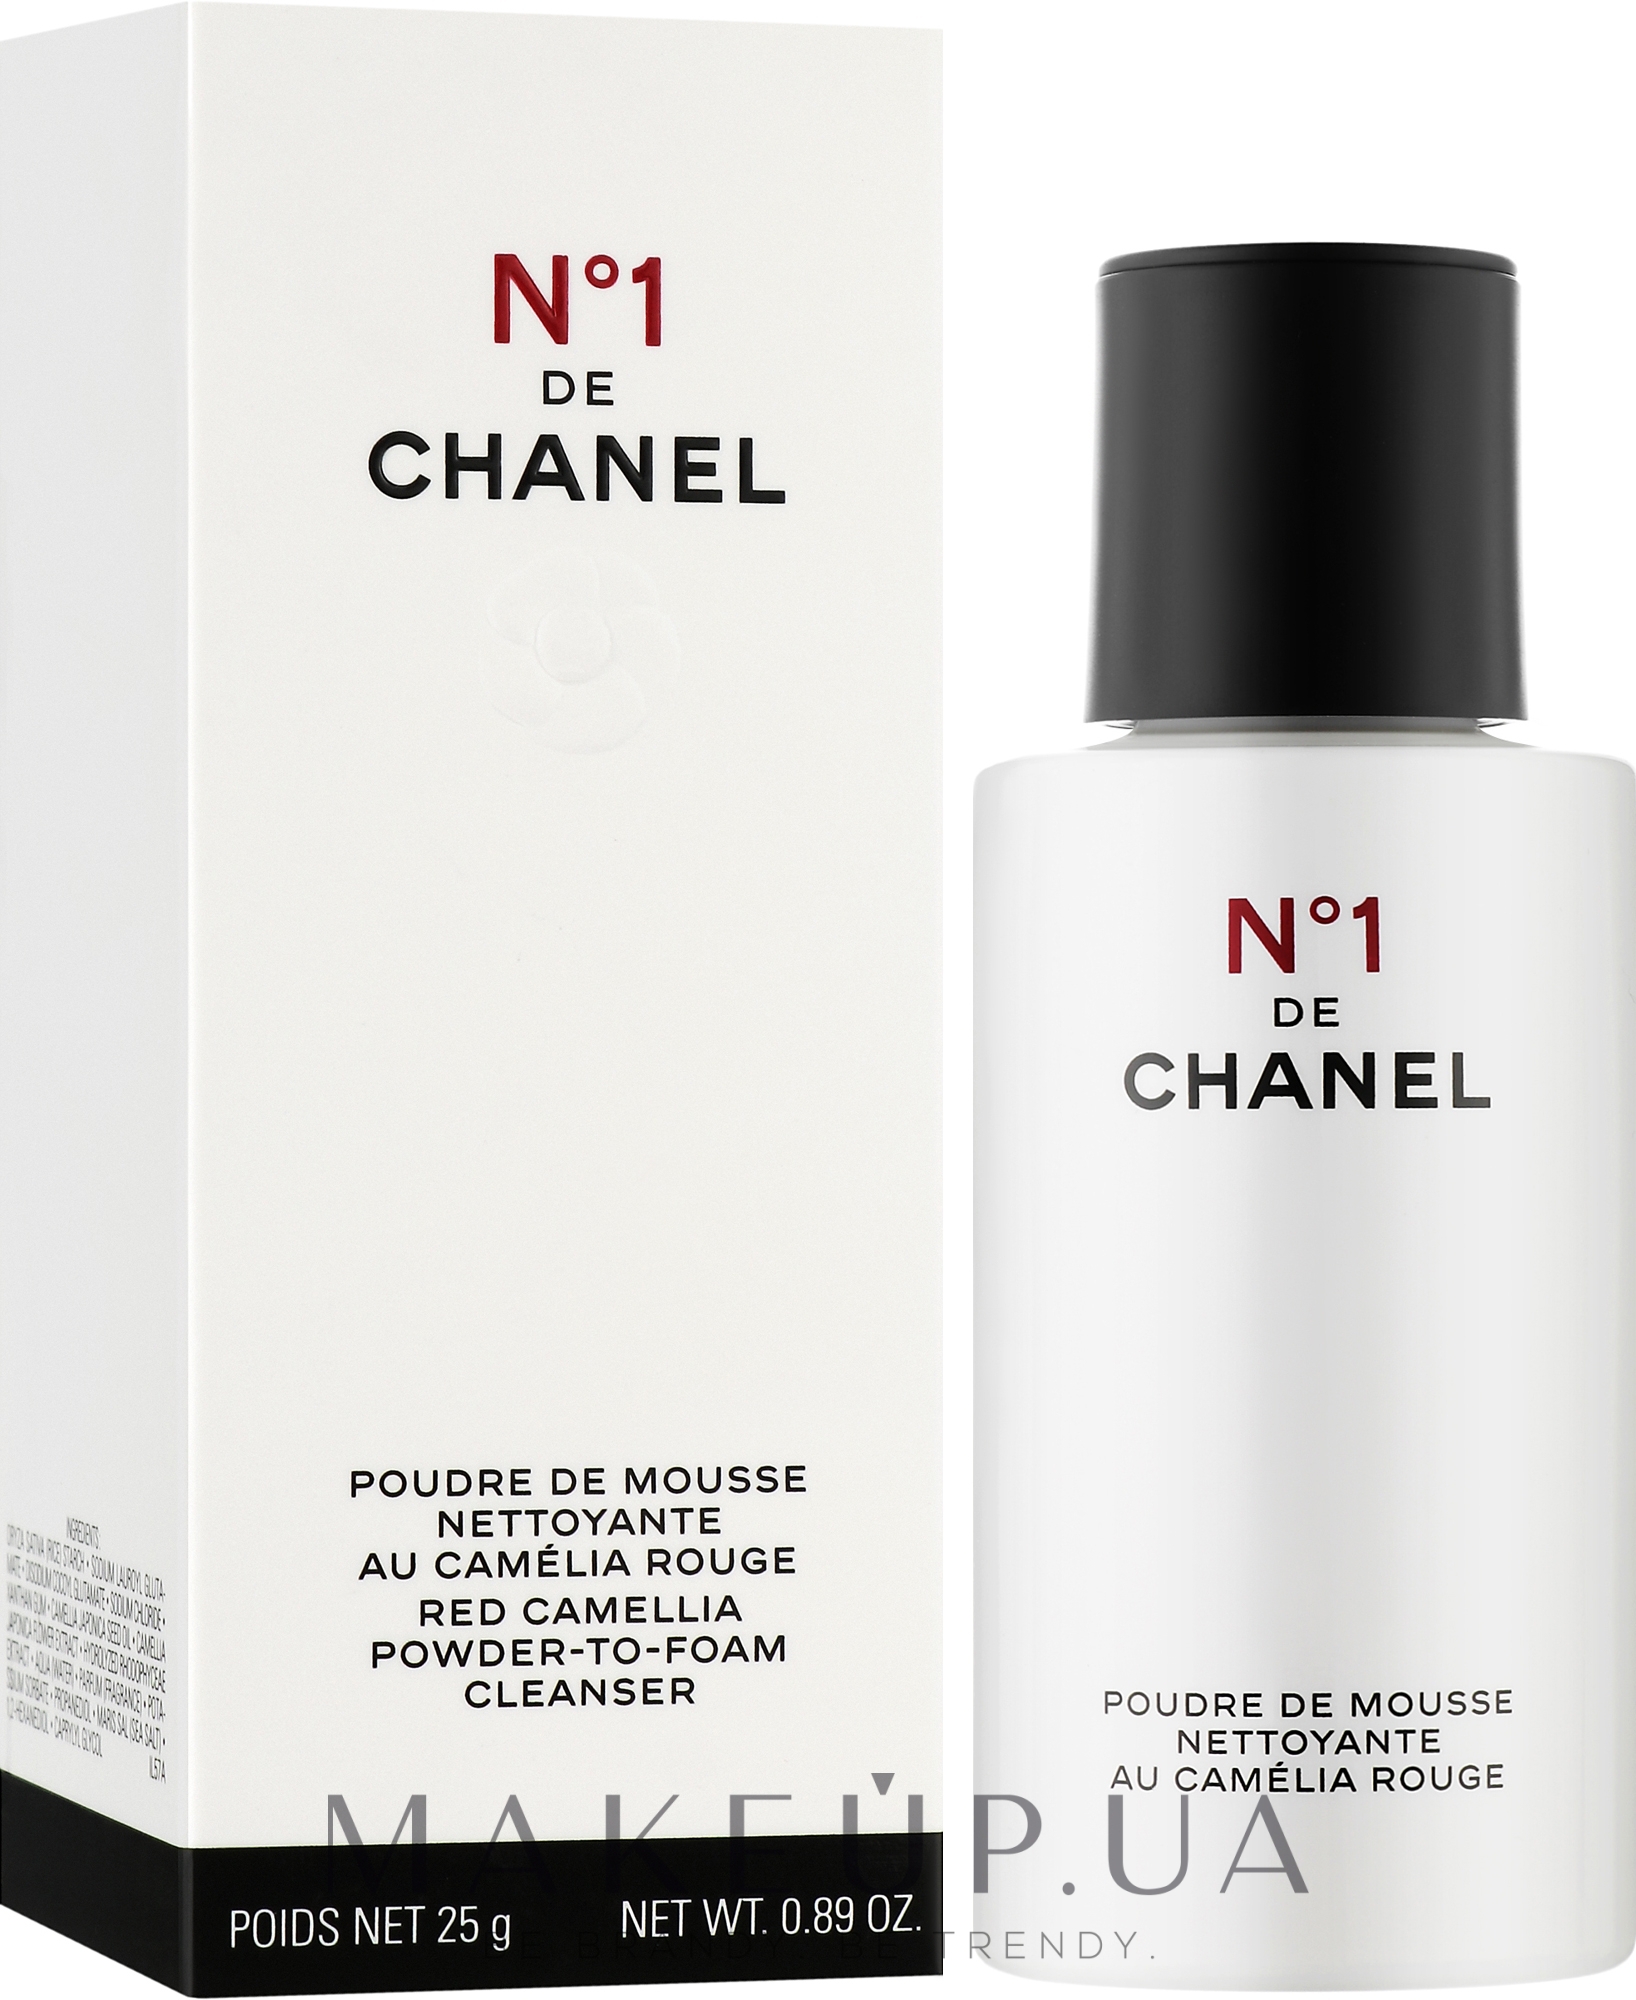 Chanel N De Chanel Cleansing Foam Powder